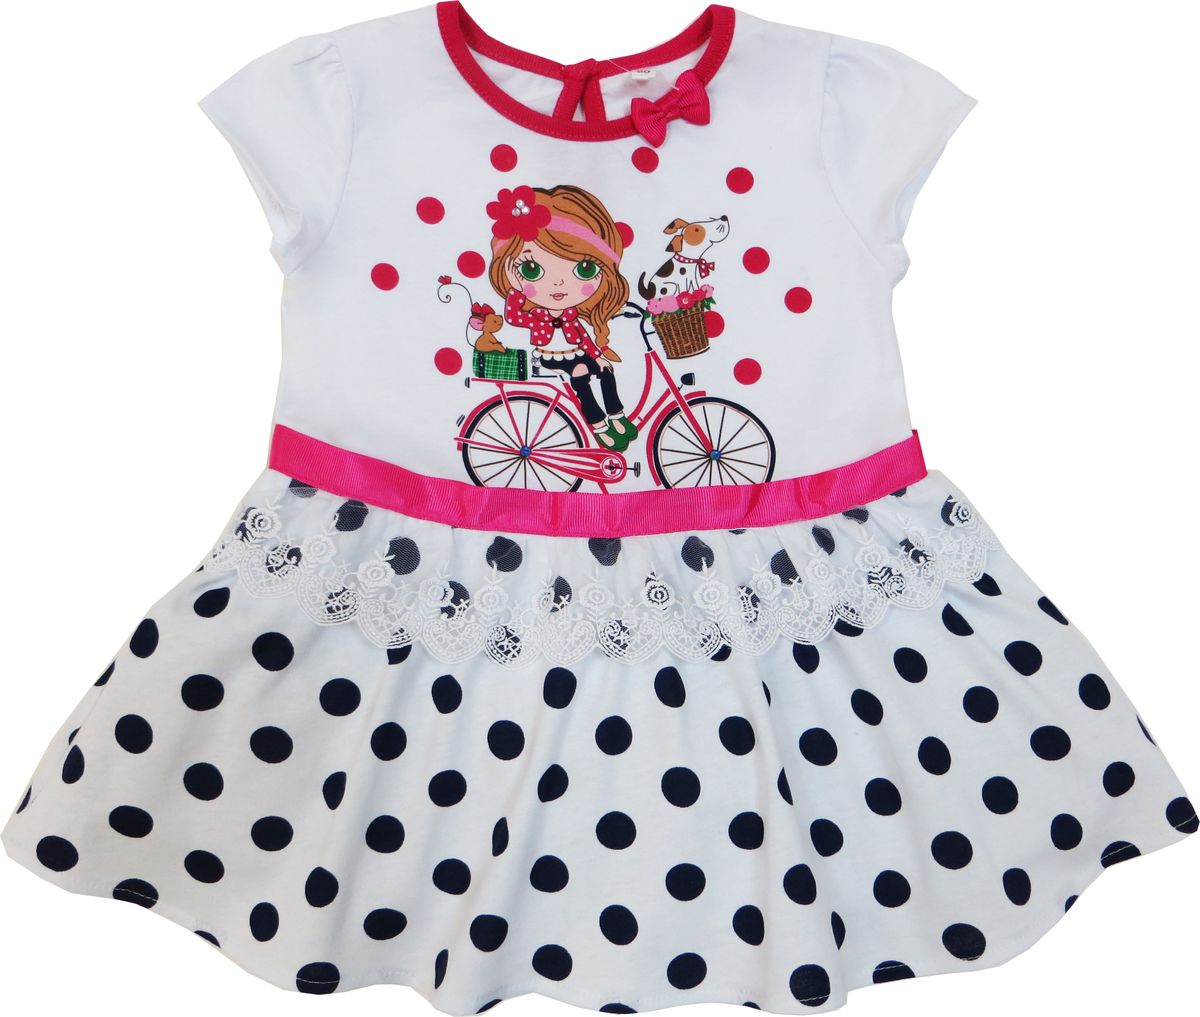 Платье Soni Kids Каникулы Мари, цвет: белый, красный. Л7105001-92к. Размер 92